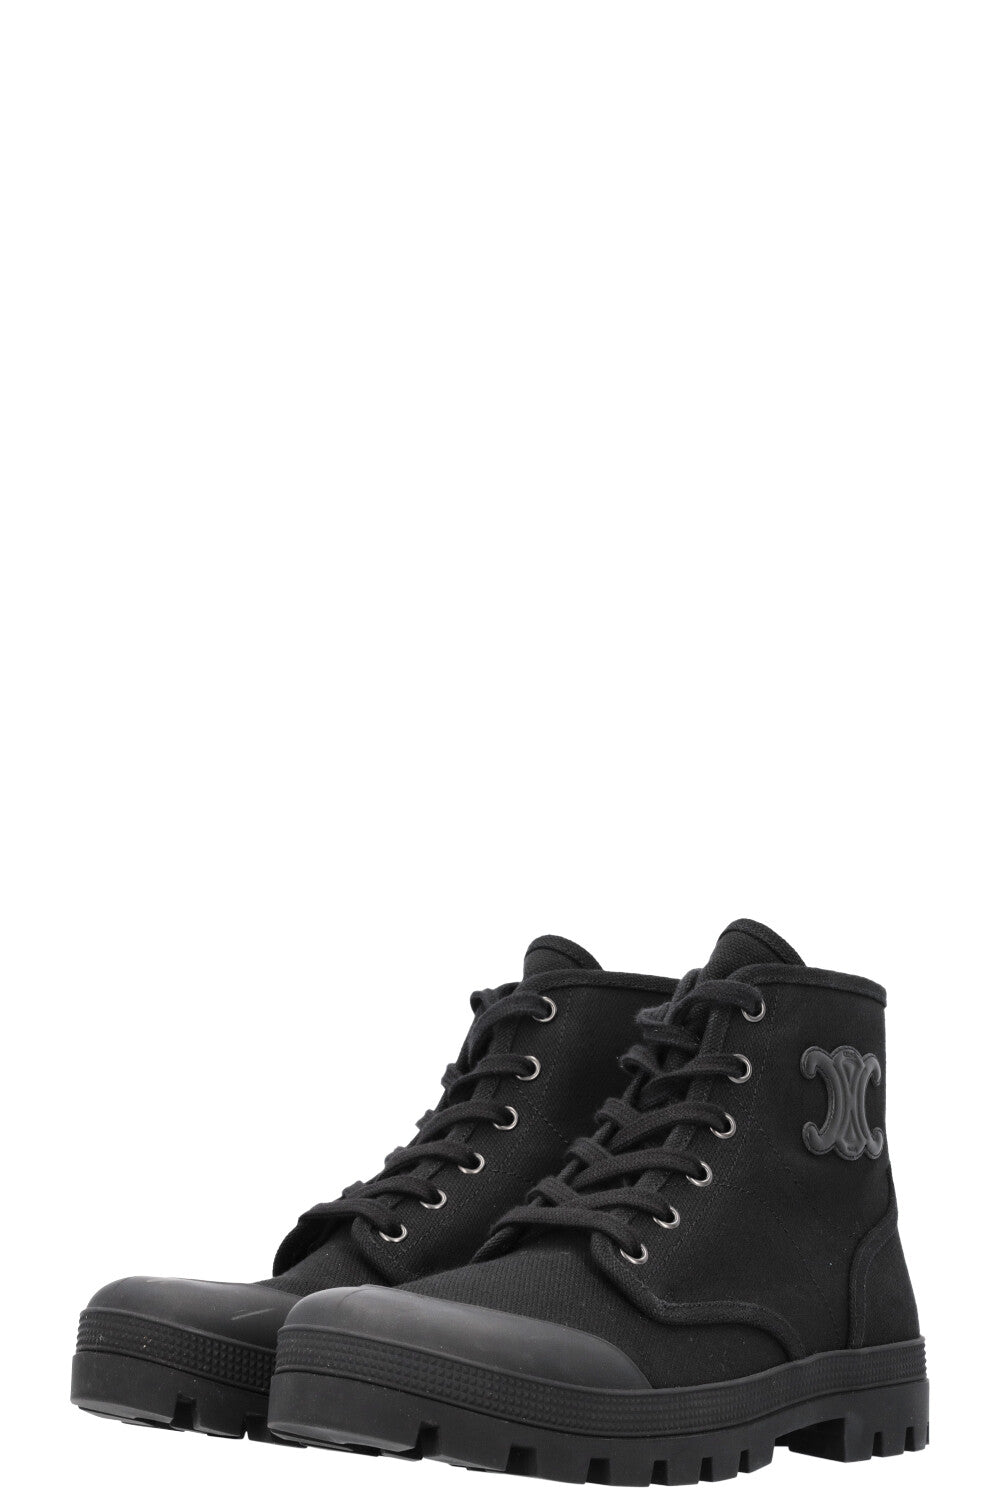 CELINE Patapans Boots Black